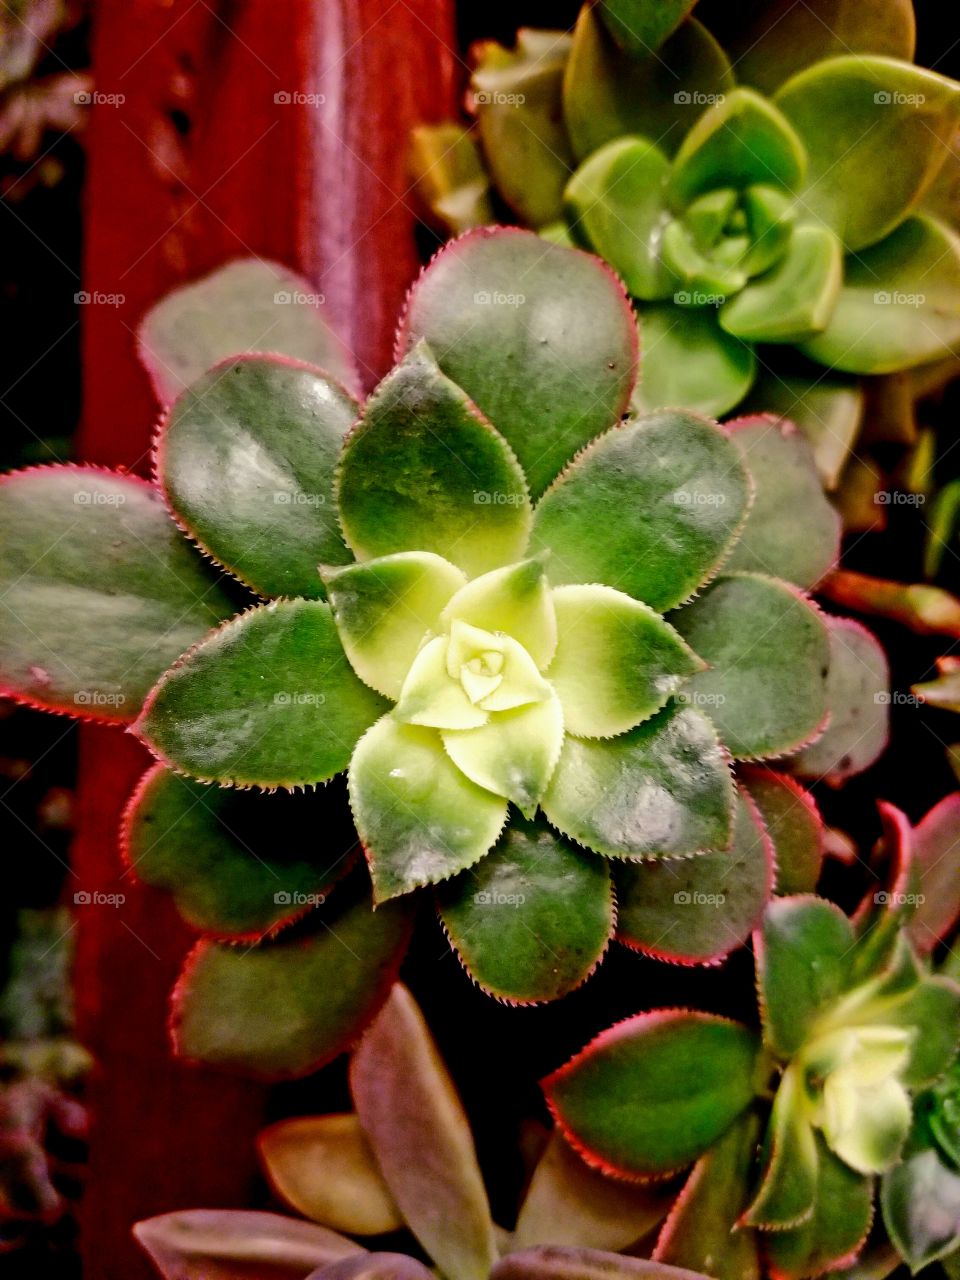 Aeonium 'Kiwi' (Kiwi Aeonium) - This succulent forms rosettes